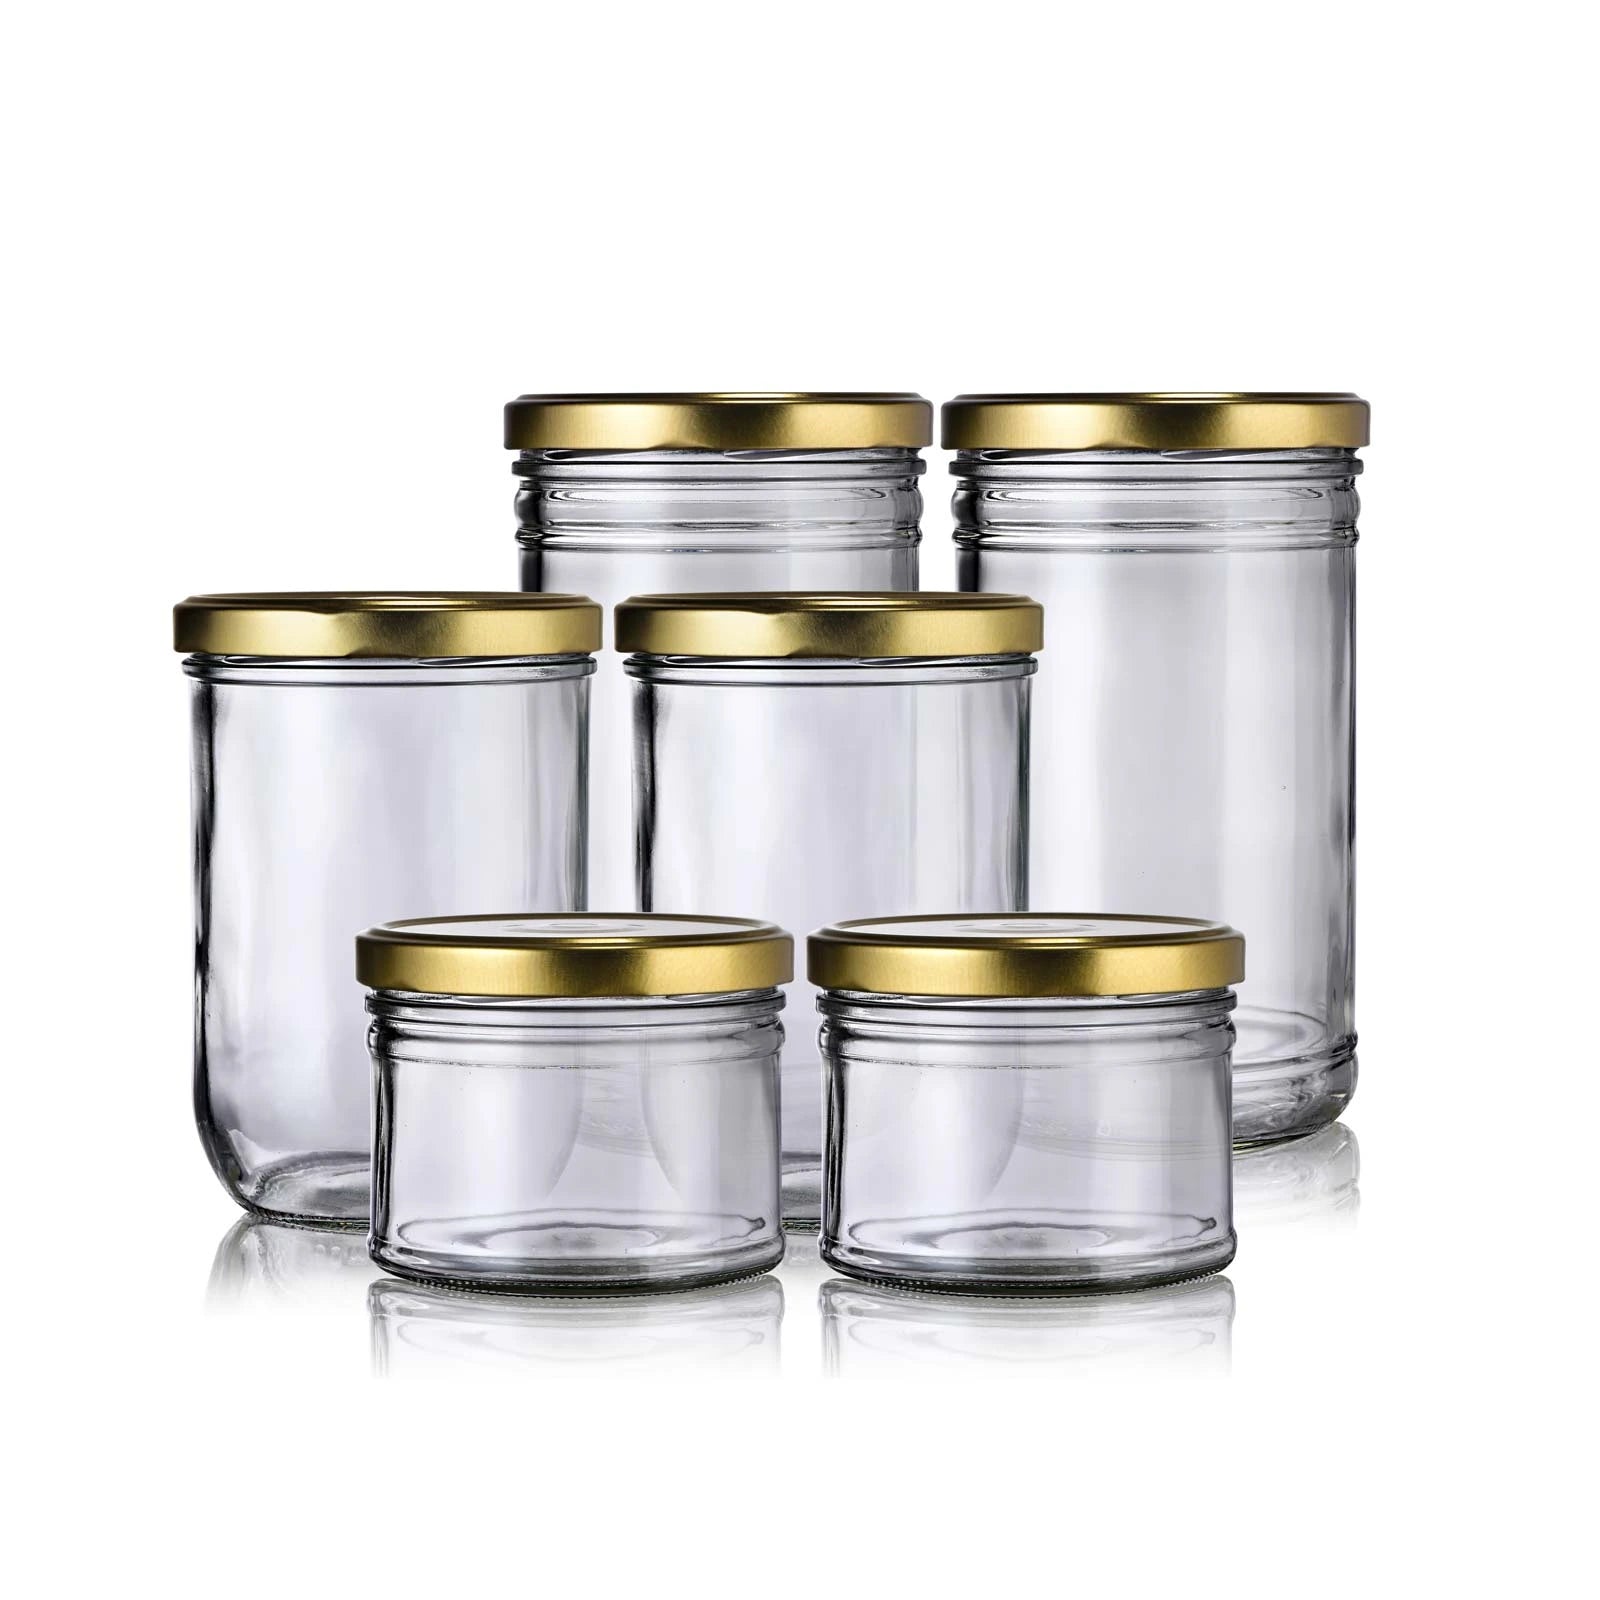 Bocaux verre Boite conservation alimentaire Pot conservation verre Pot verre  4052025432256